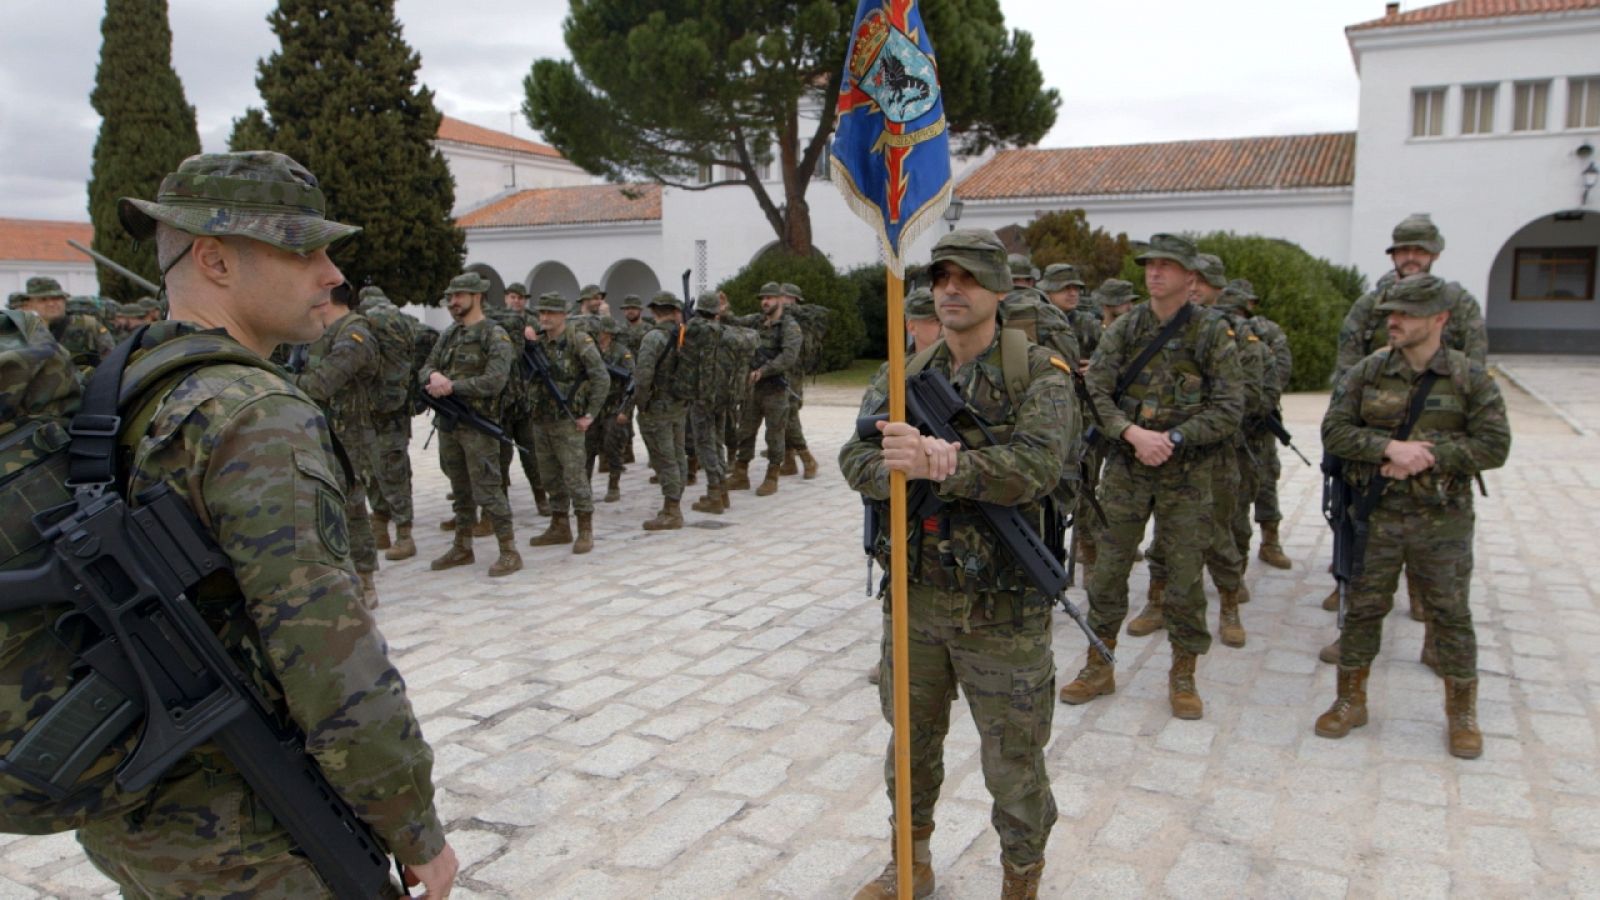 El Regimiento 71 de Artillería Antiaérea es el más antiguo del ejército español, ubicado en la Base de Fuencarral